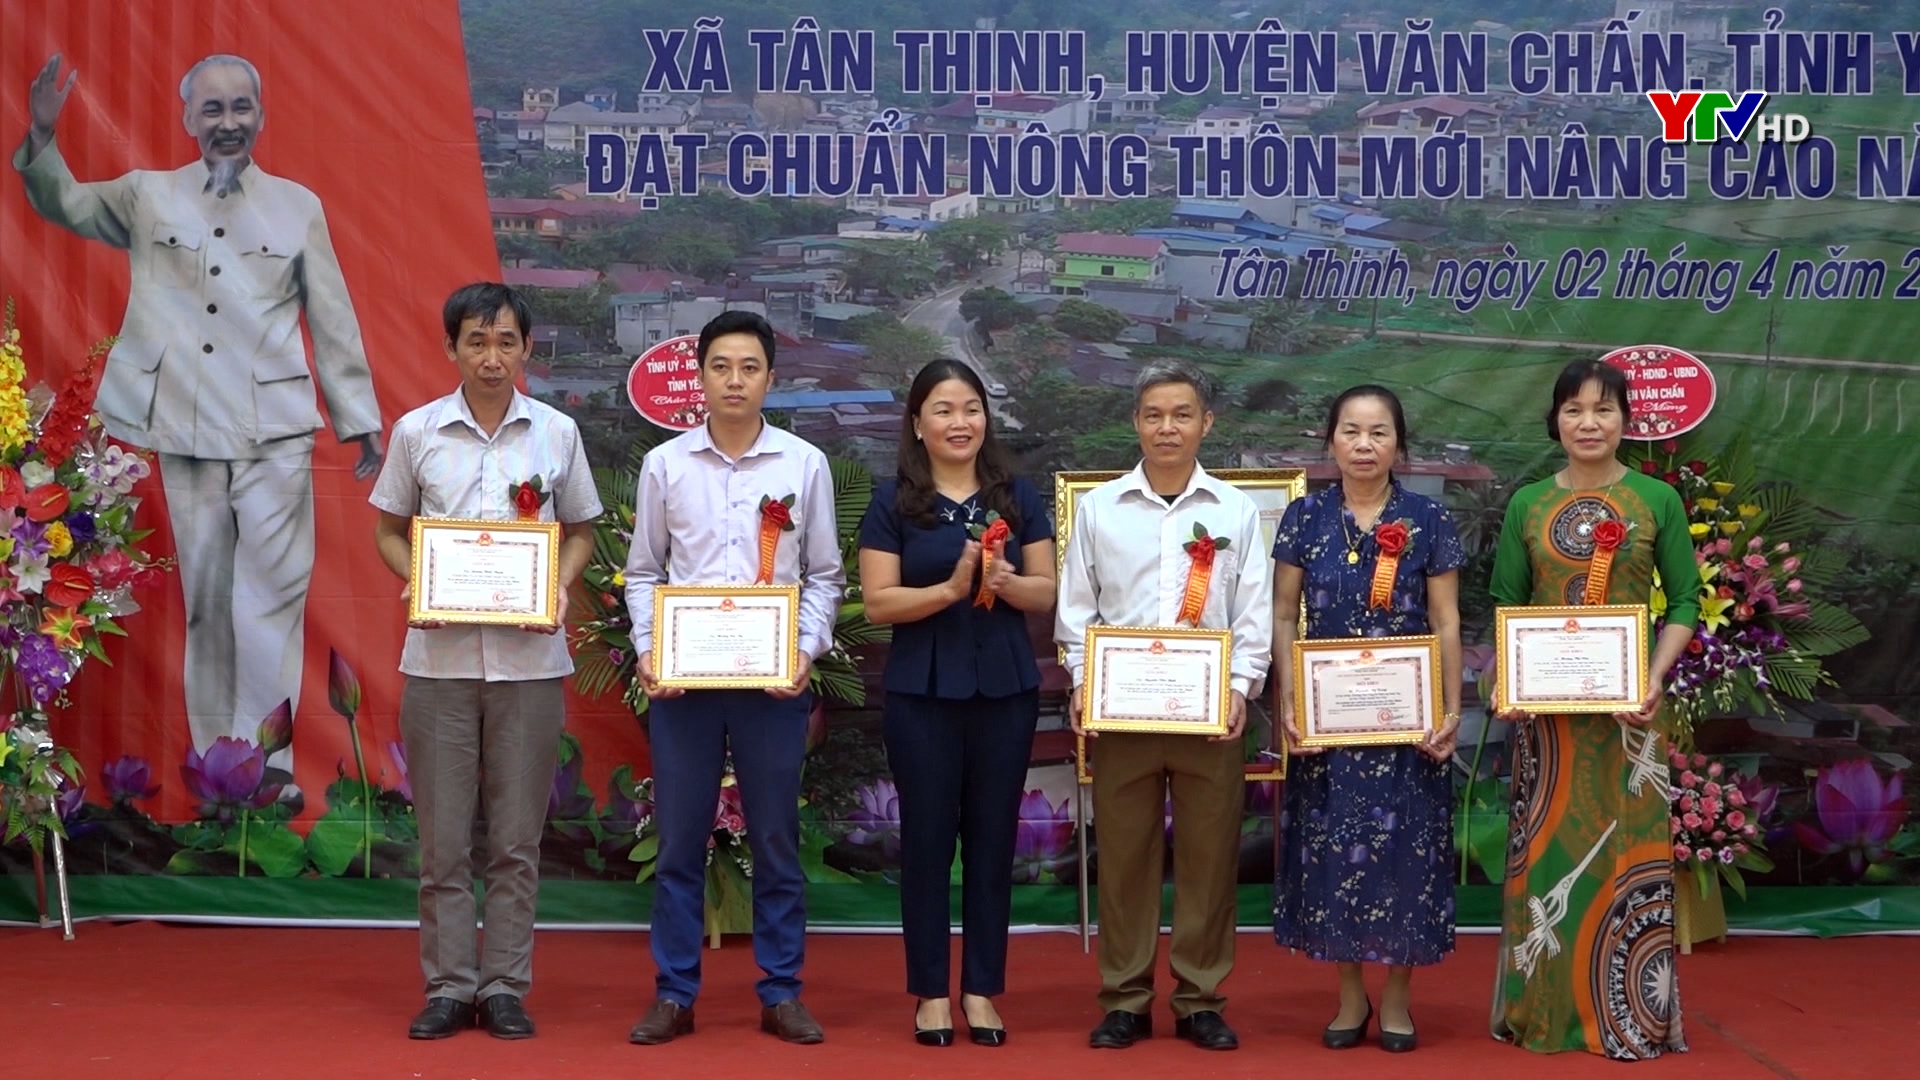 Xã Tân Thịnh, huyện Văn Chấn đạt chuẩn nông thôn mới nâng cao